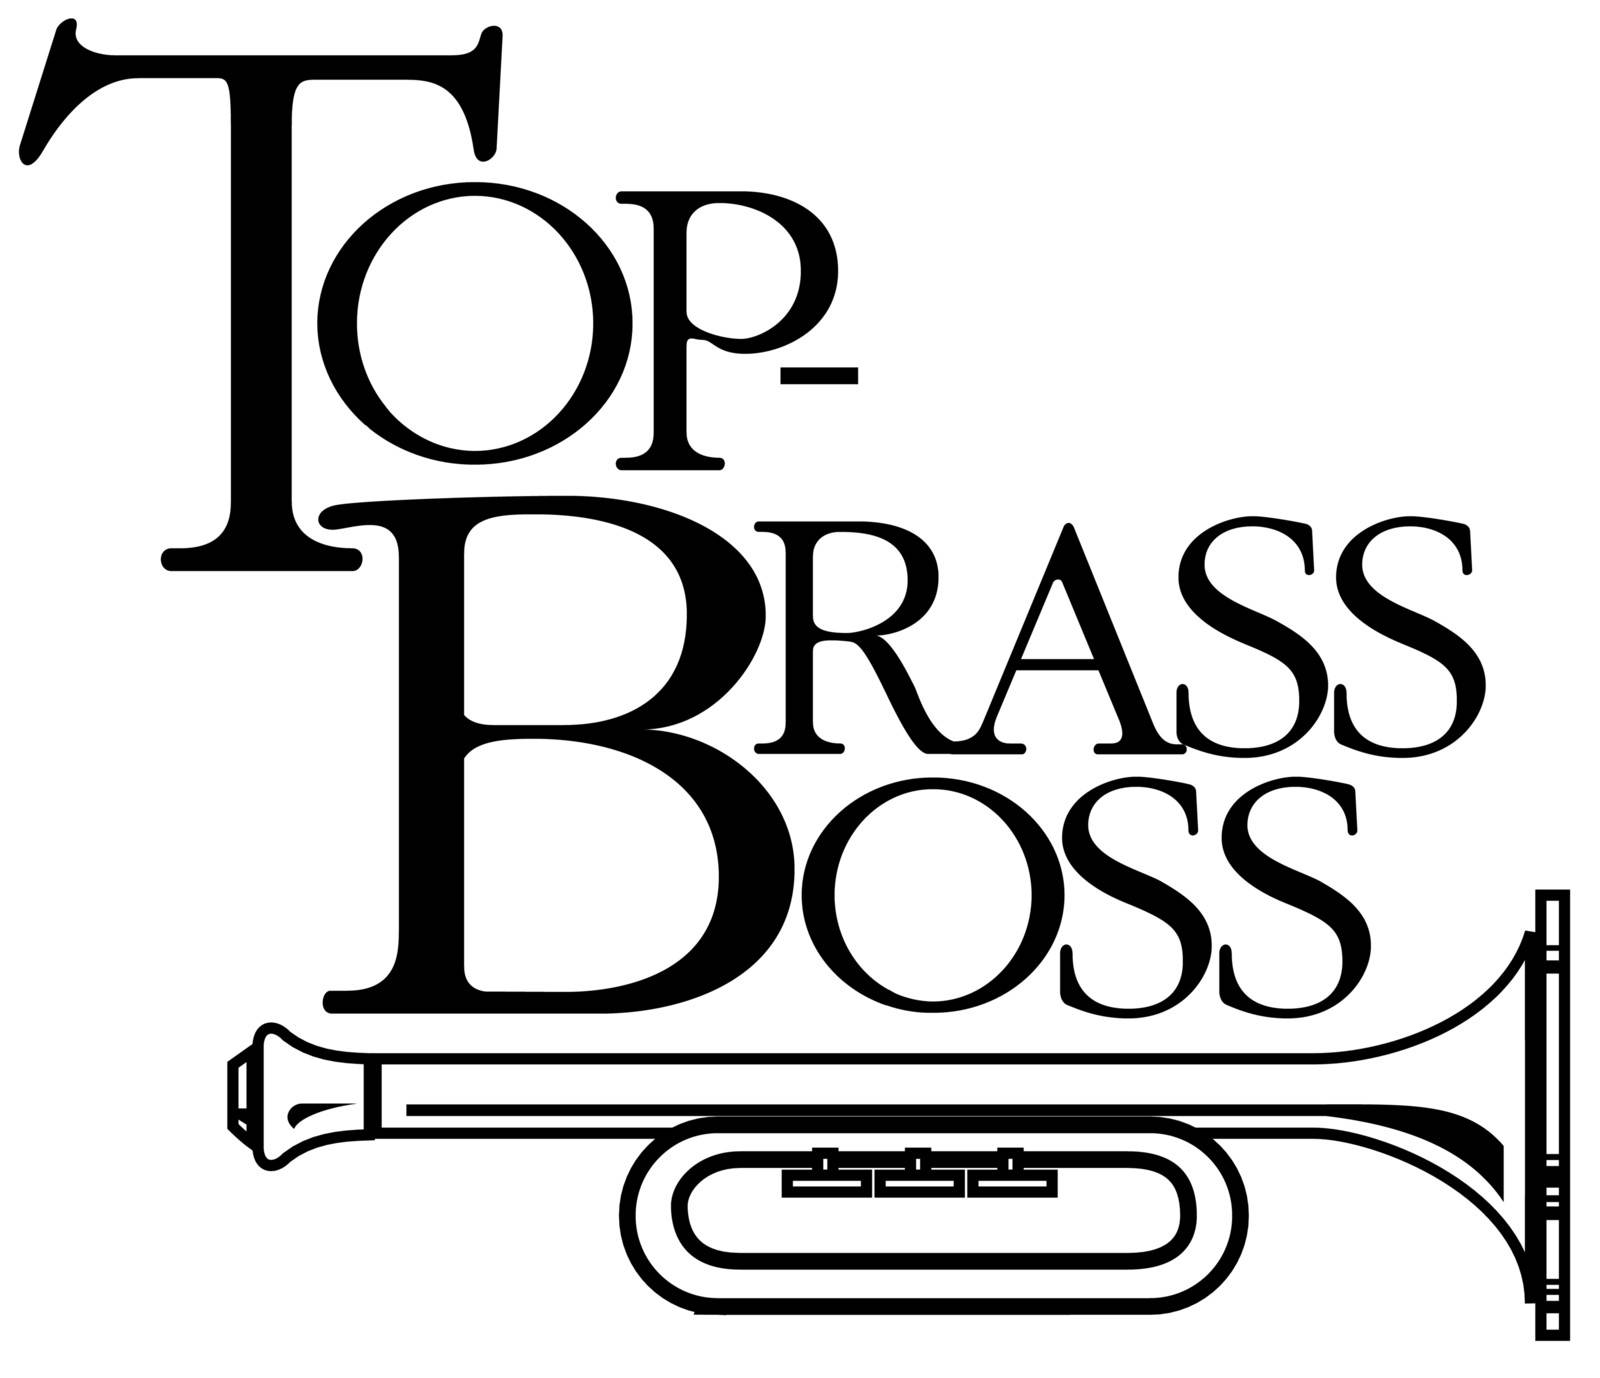 top brass boss by yurka